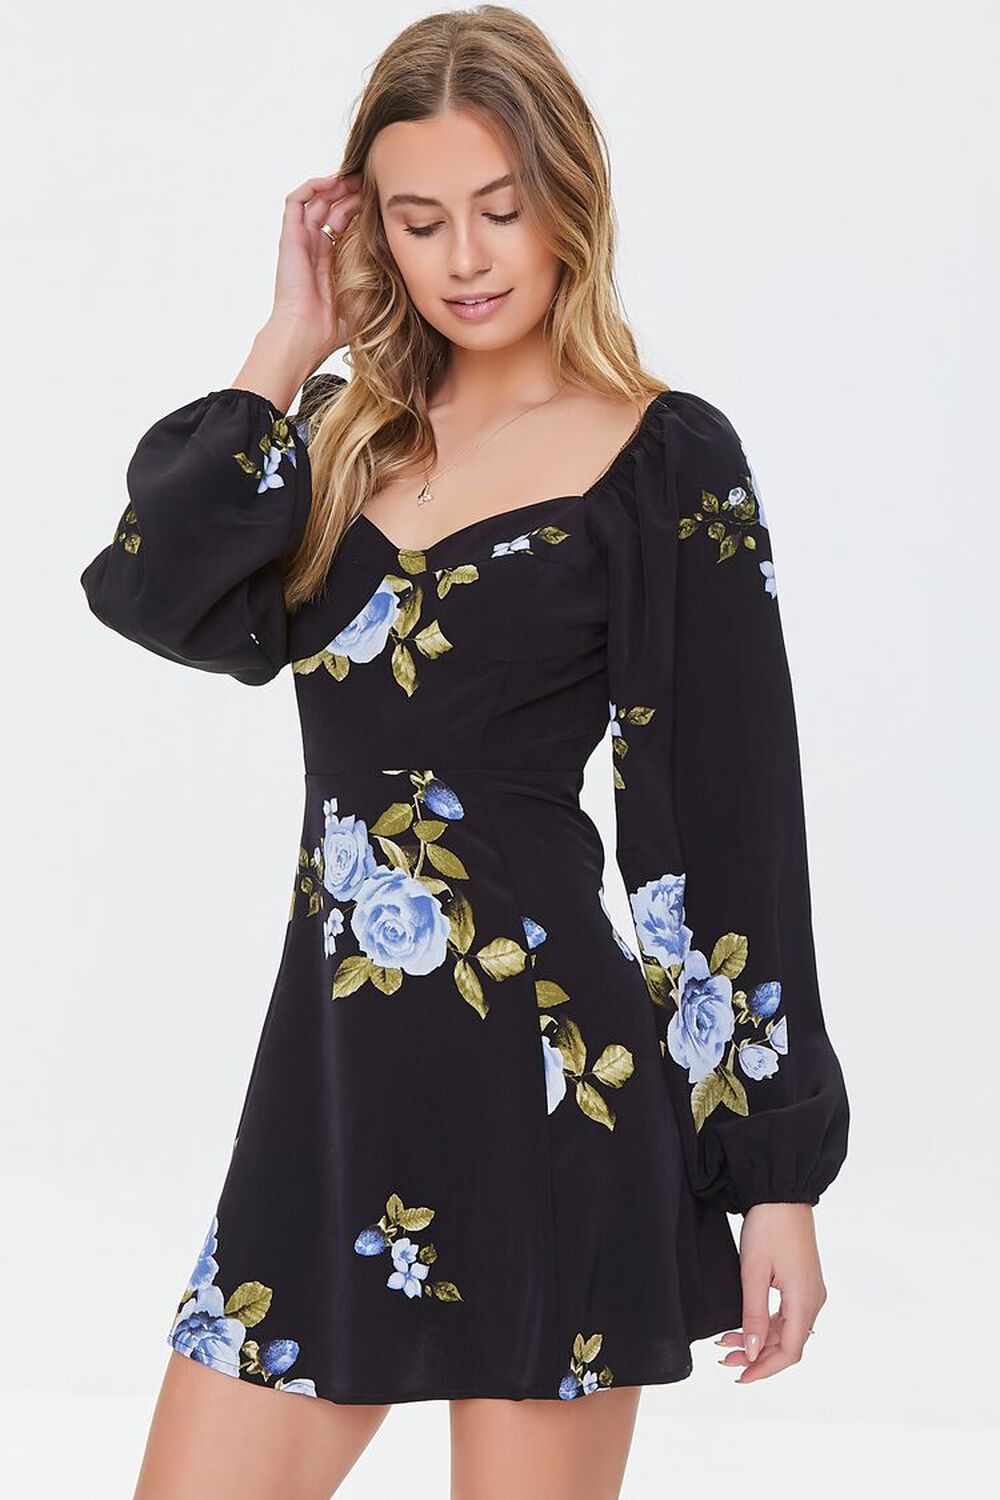 BLACK/MULTI Floral Print Mini Dress, image 1